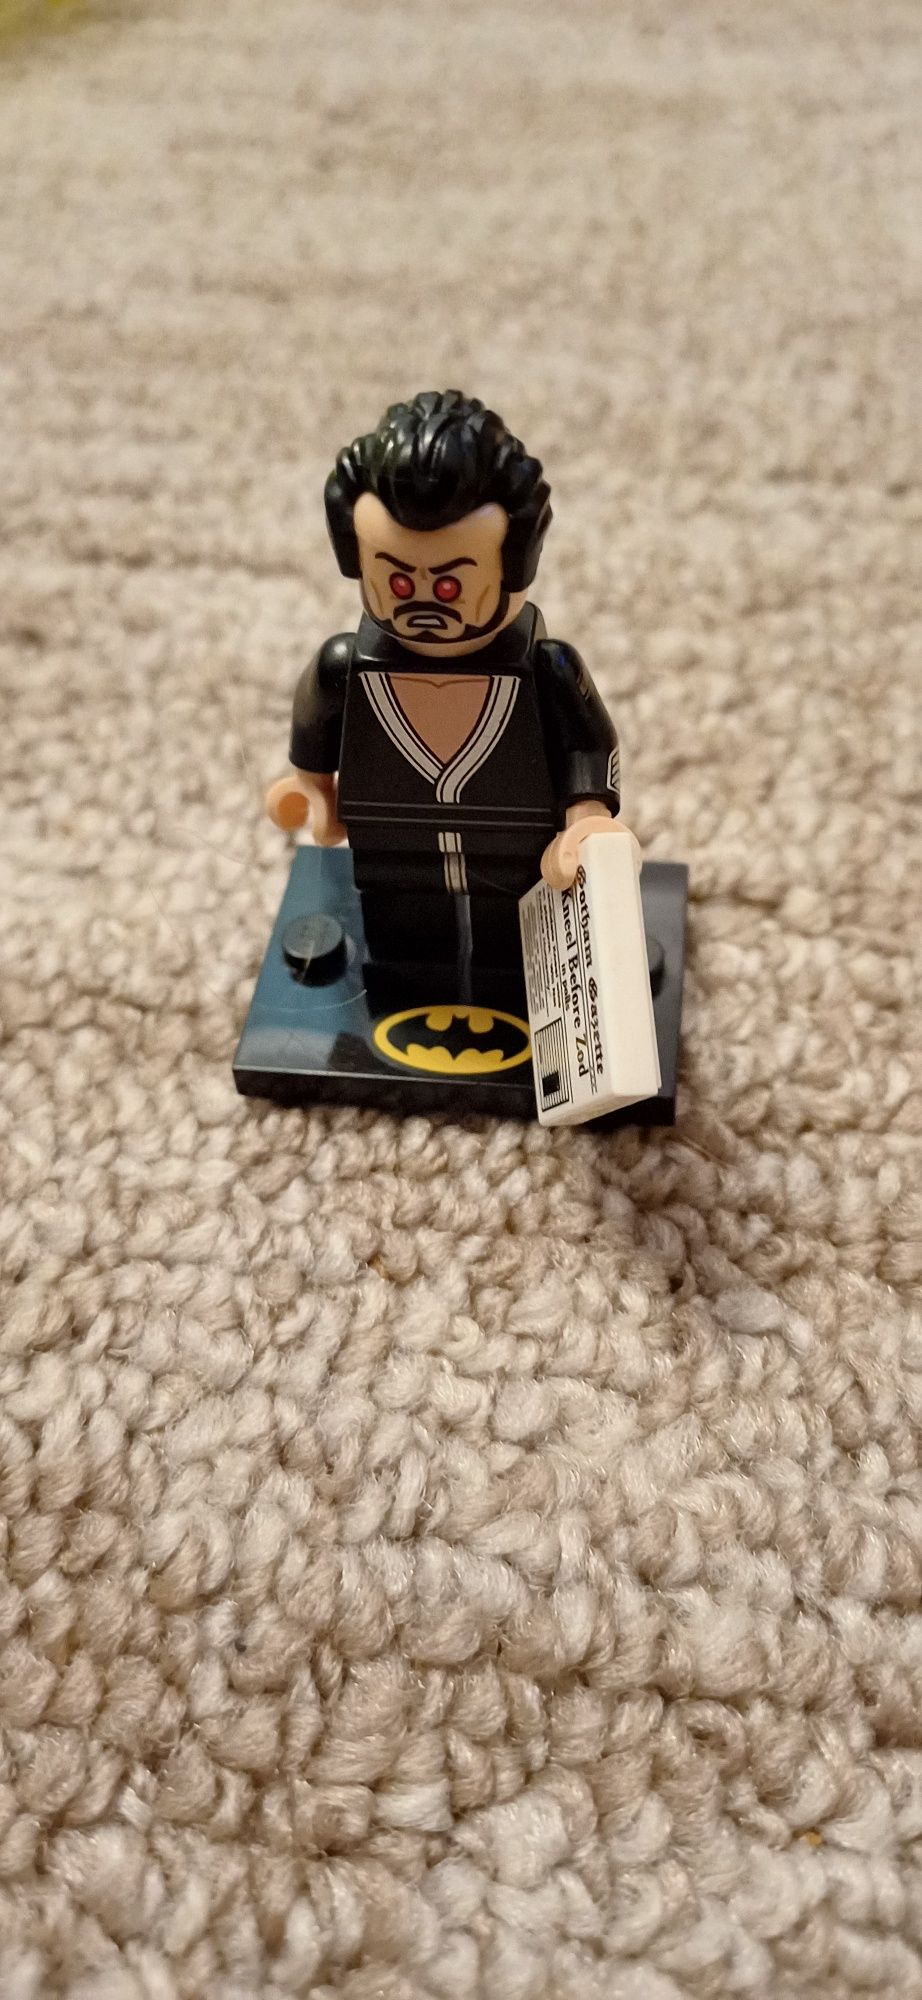 Lego batman figurka General Zod